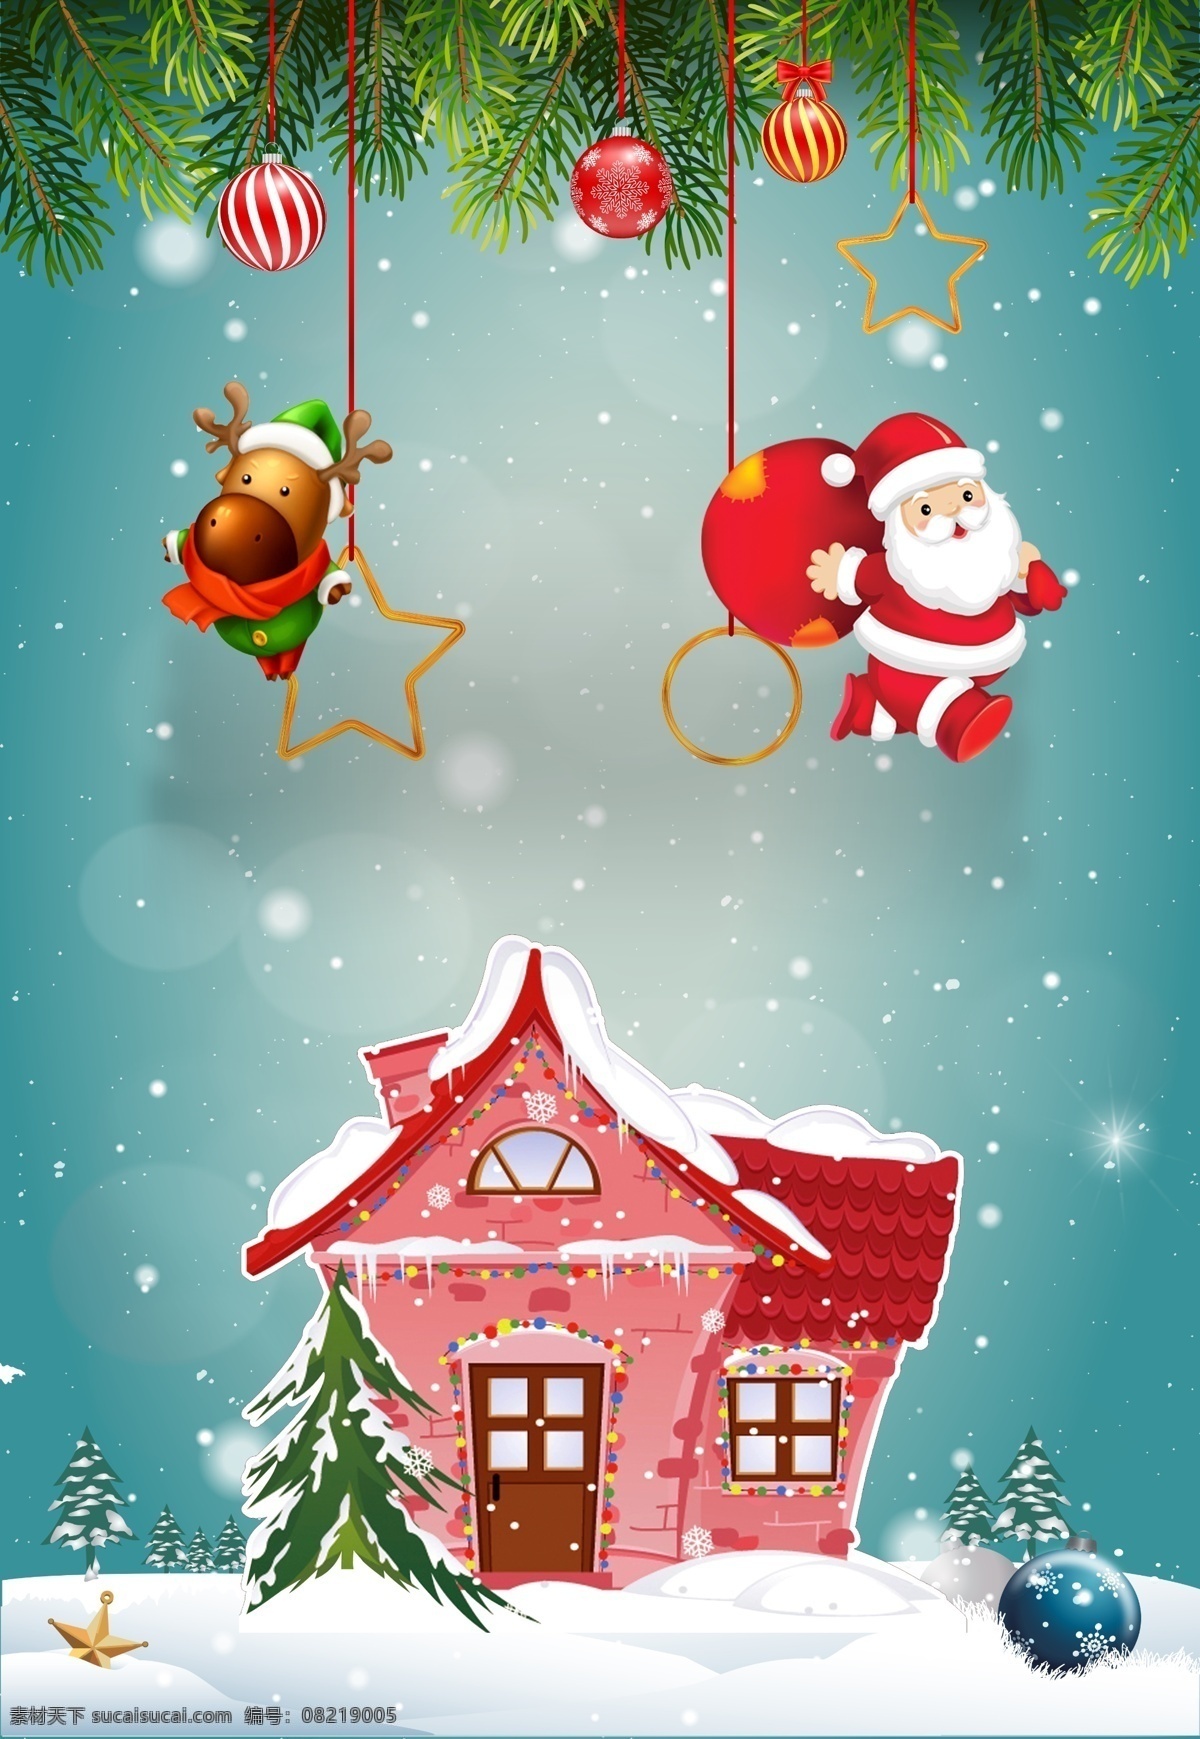 精美 圣诞节 促销 背景 五角星 圣诞老人 城堡 圣诞树 松枝 麋鹿 下雪 冬季背景 圣诞背景图 圣诞广告 圣诞 节日背景 圣诞展板